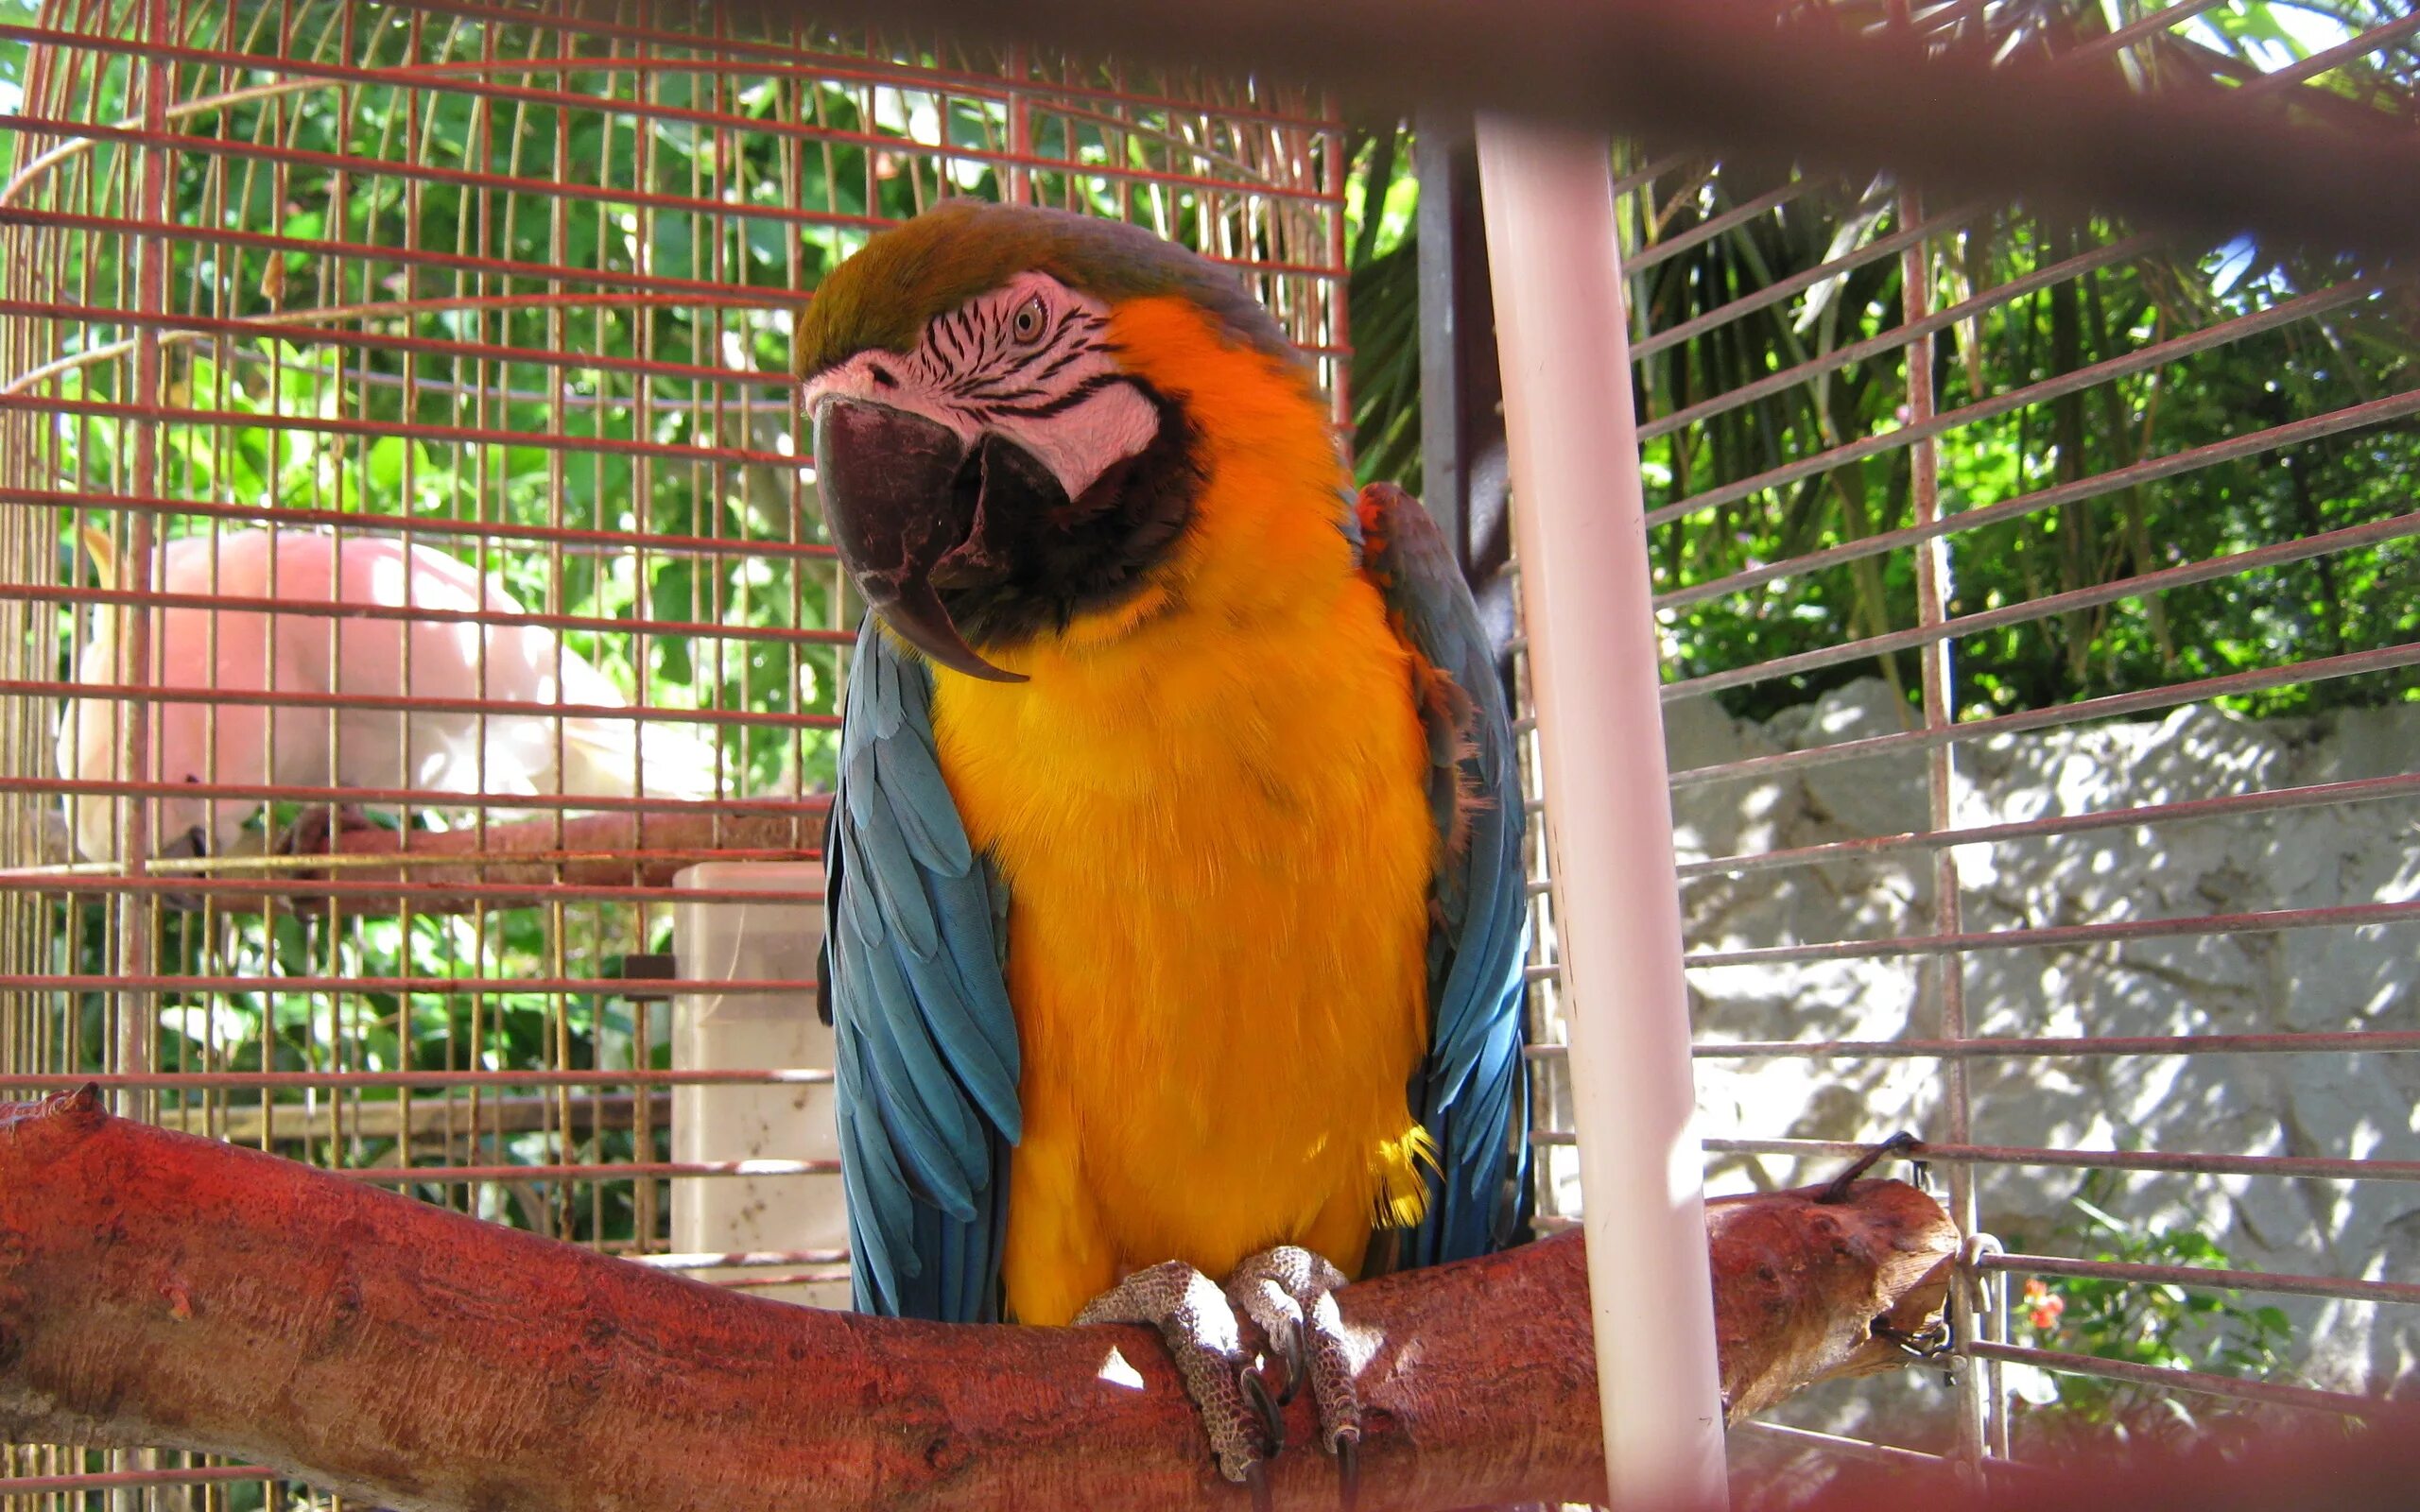 В зоопарке живут 5 видов попугаев